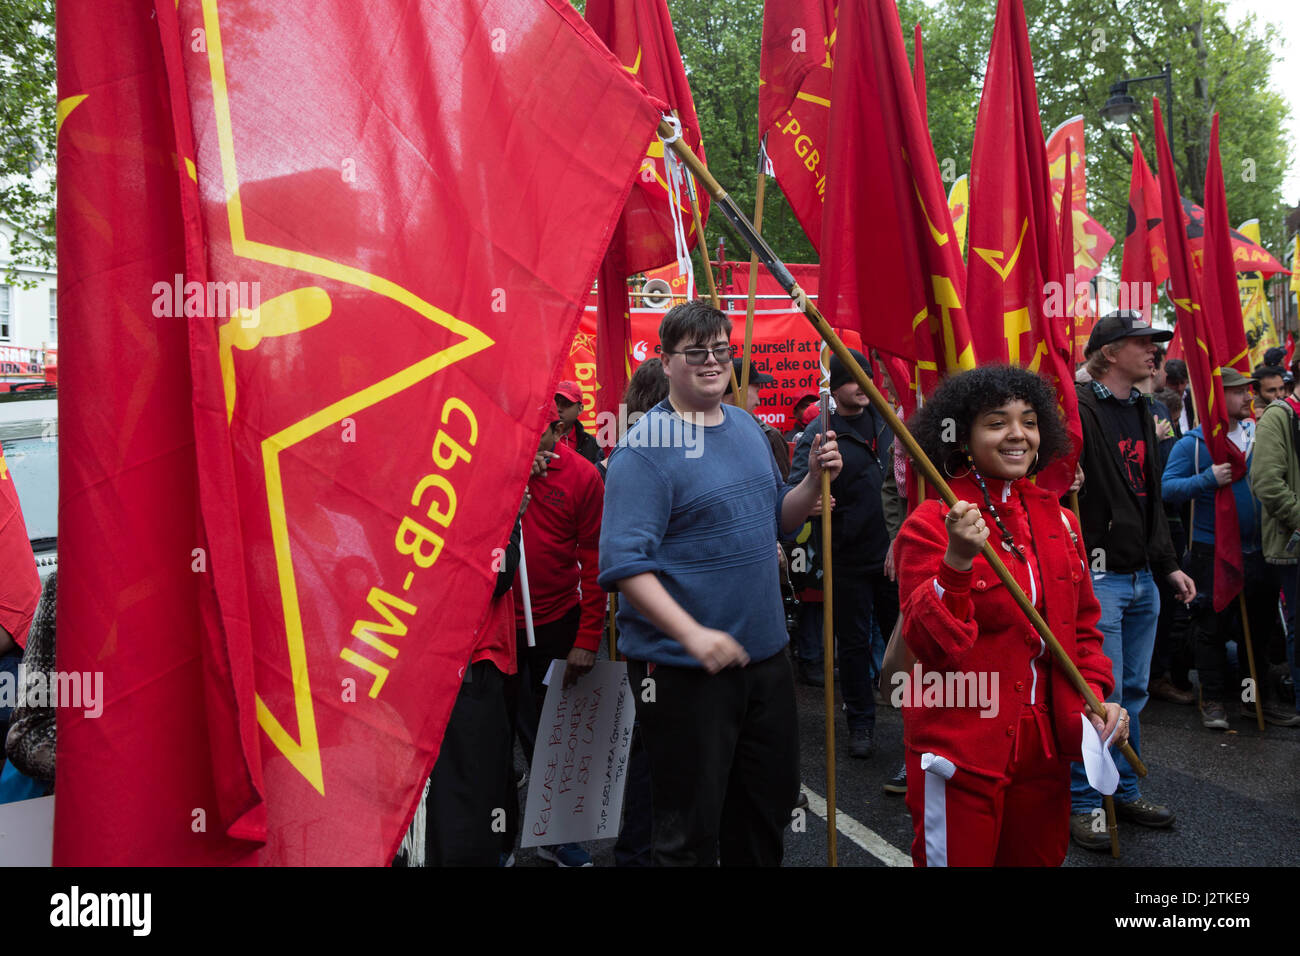 Londra, Regno Unito. Il 1 maggio, 2017. giorno di maggio marzo Londra uk battenti bandiere rosse come era il colore del giorno di credito: Brian southam/alamy live news Foto Stock